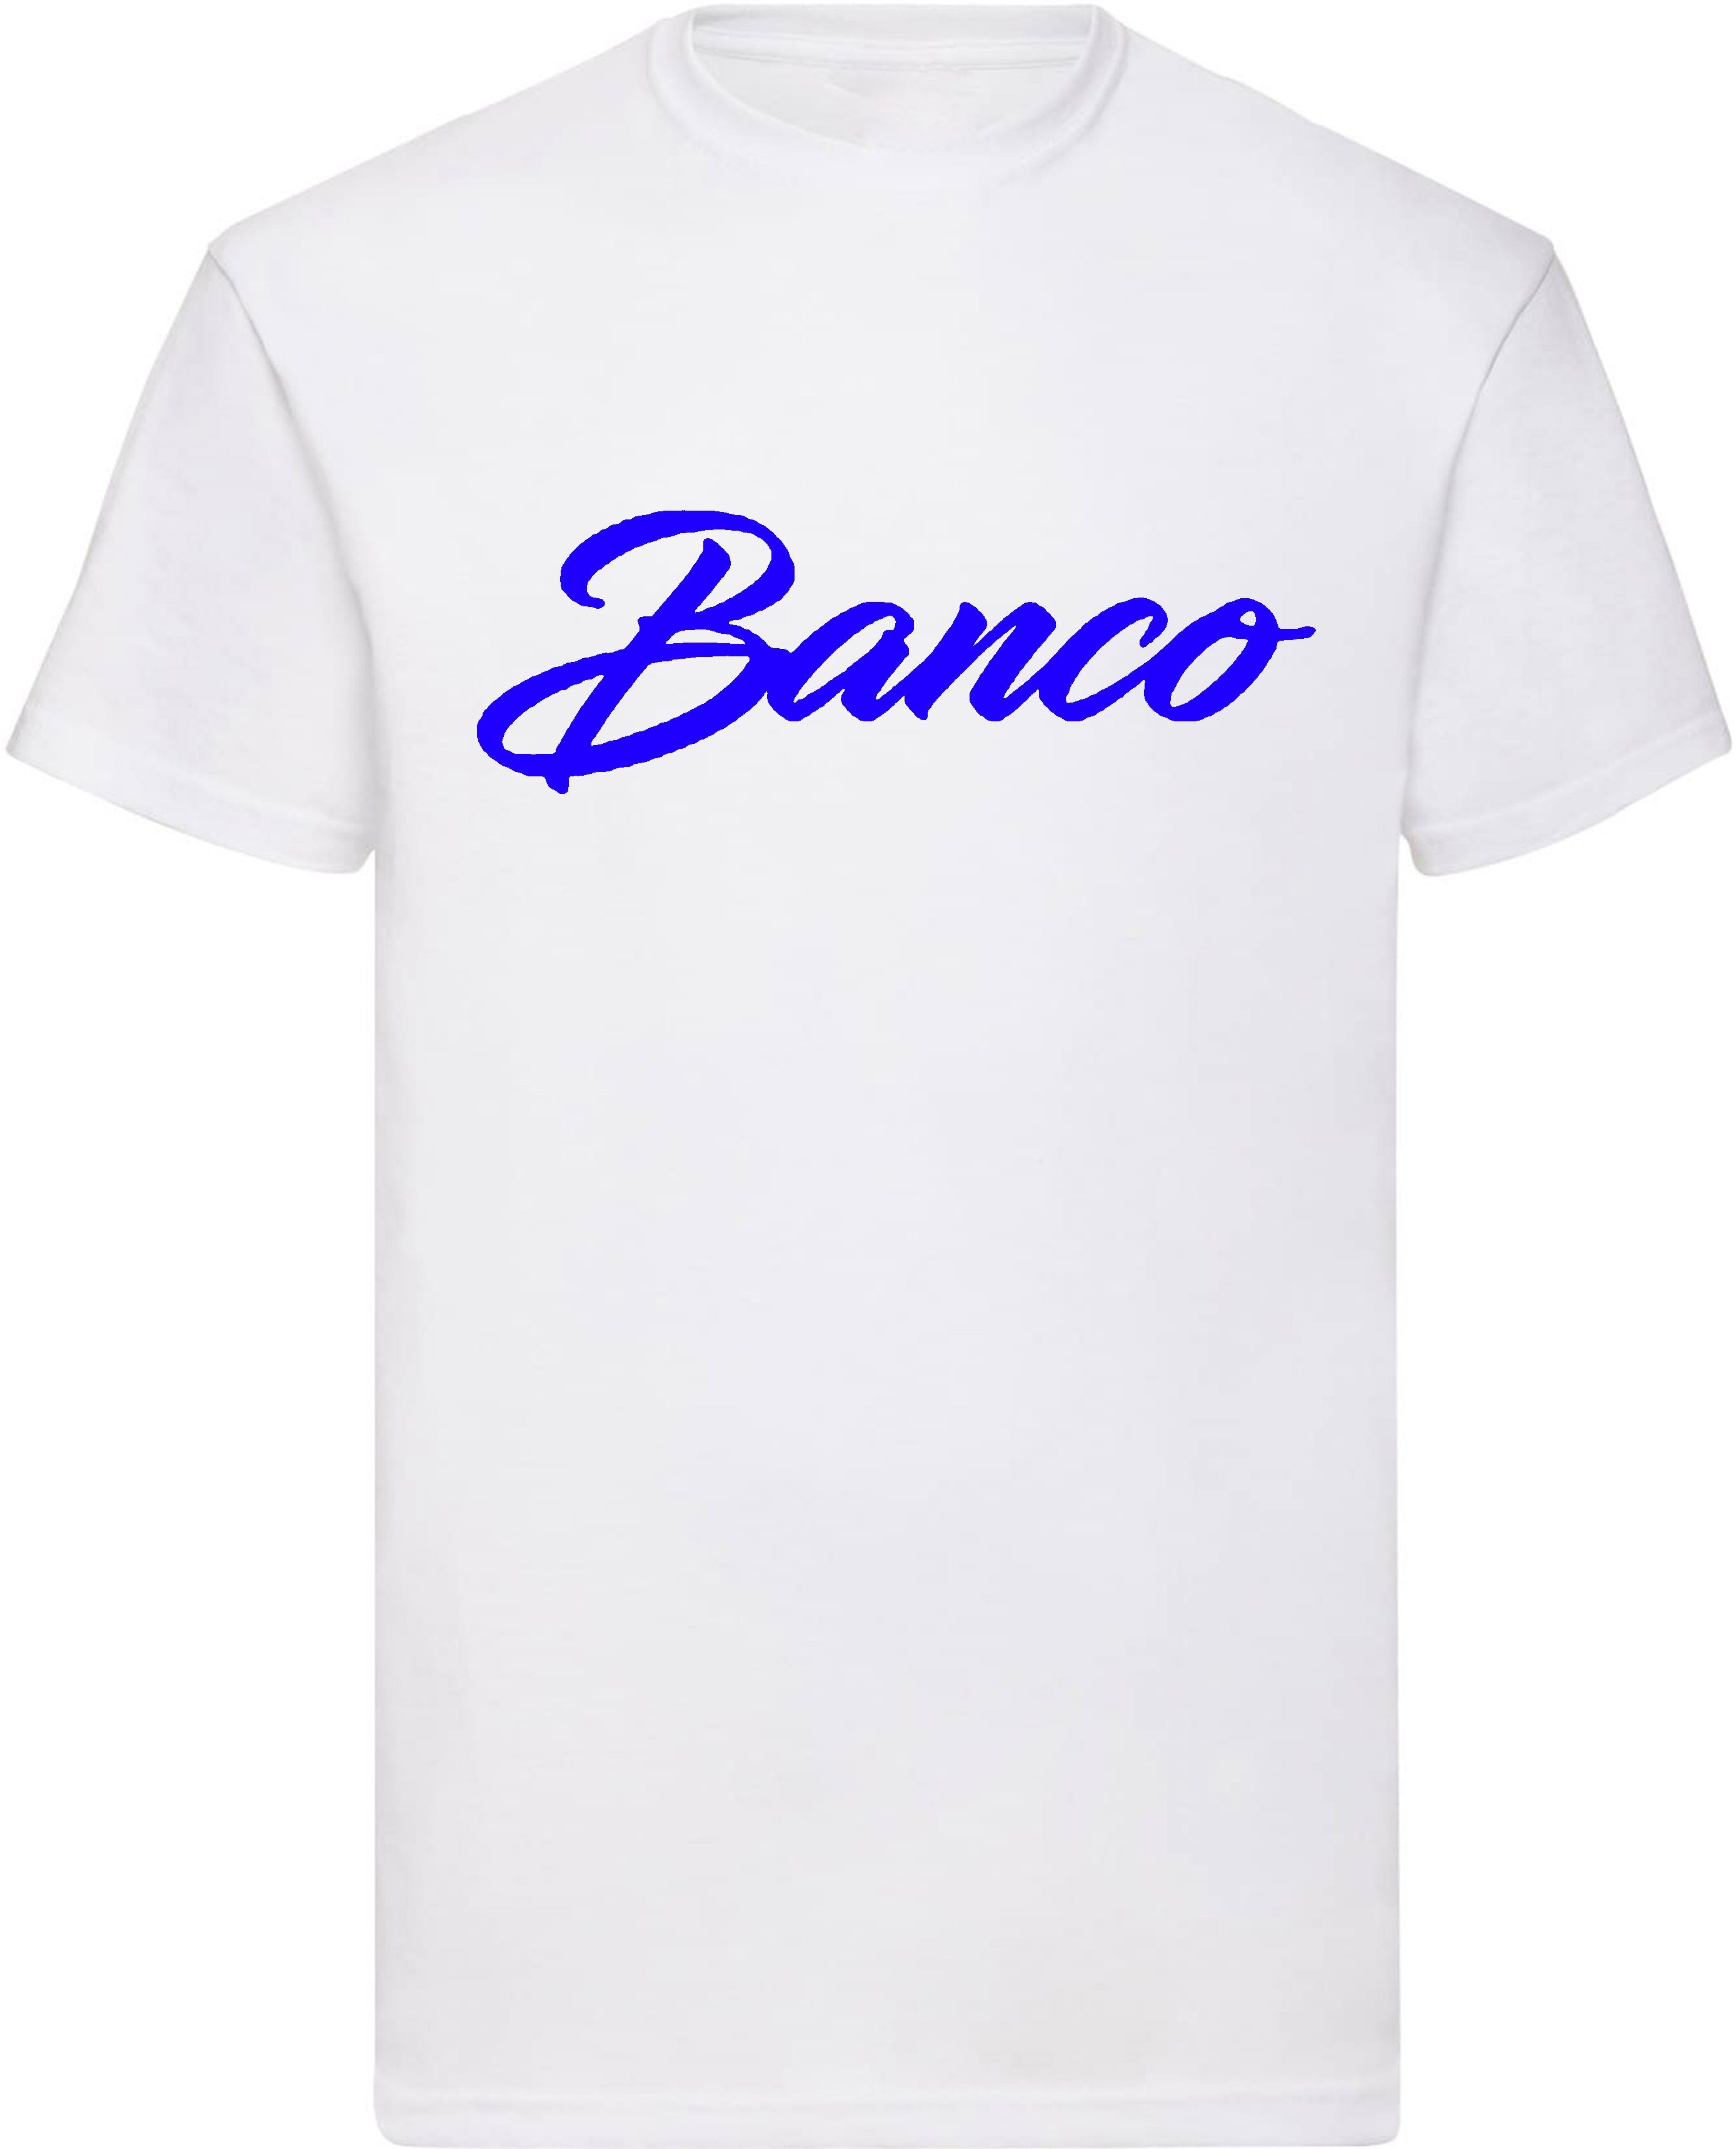 Sport Baumwolle T-Shirt 100% Shirt Banco WeißBlau Sommer Streetwear Kurzarm Rundhals Freizeit